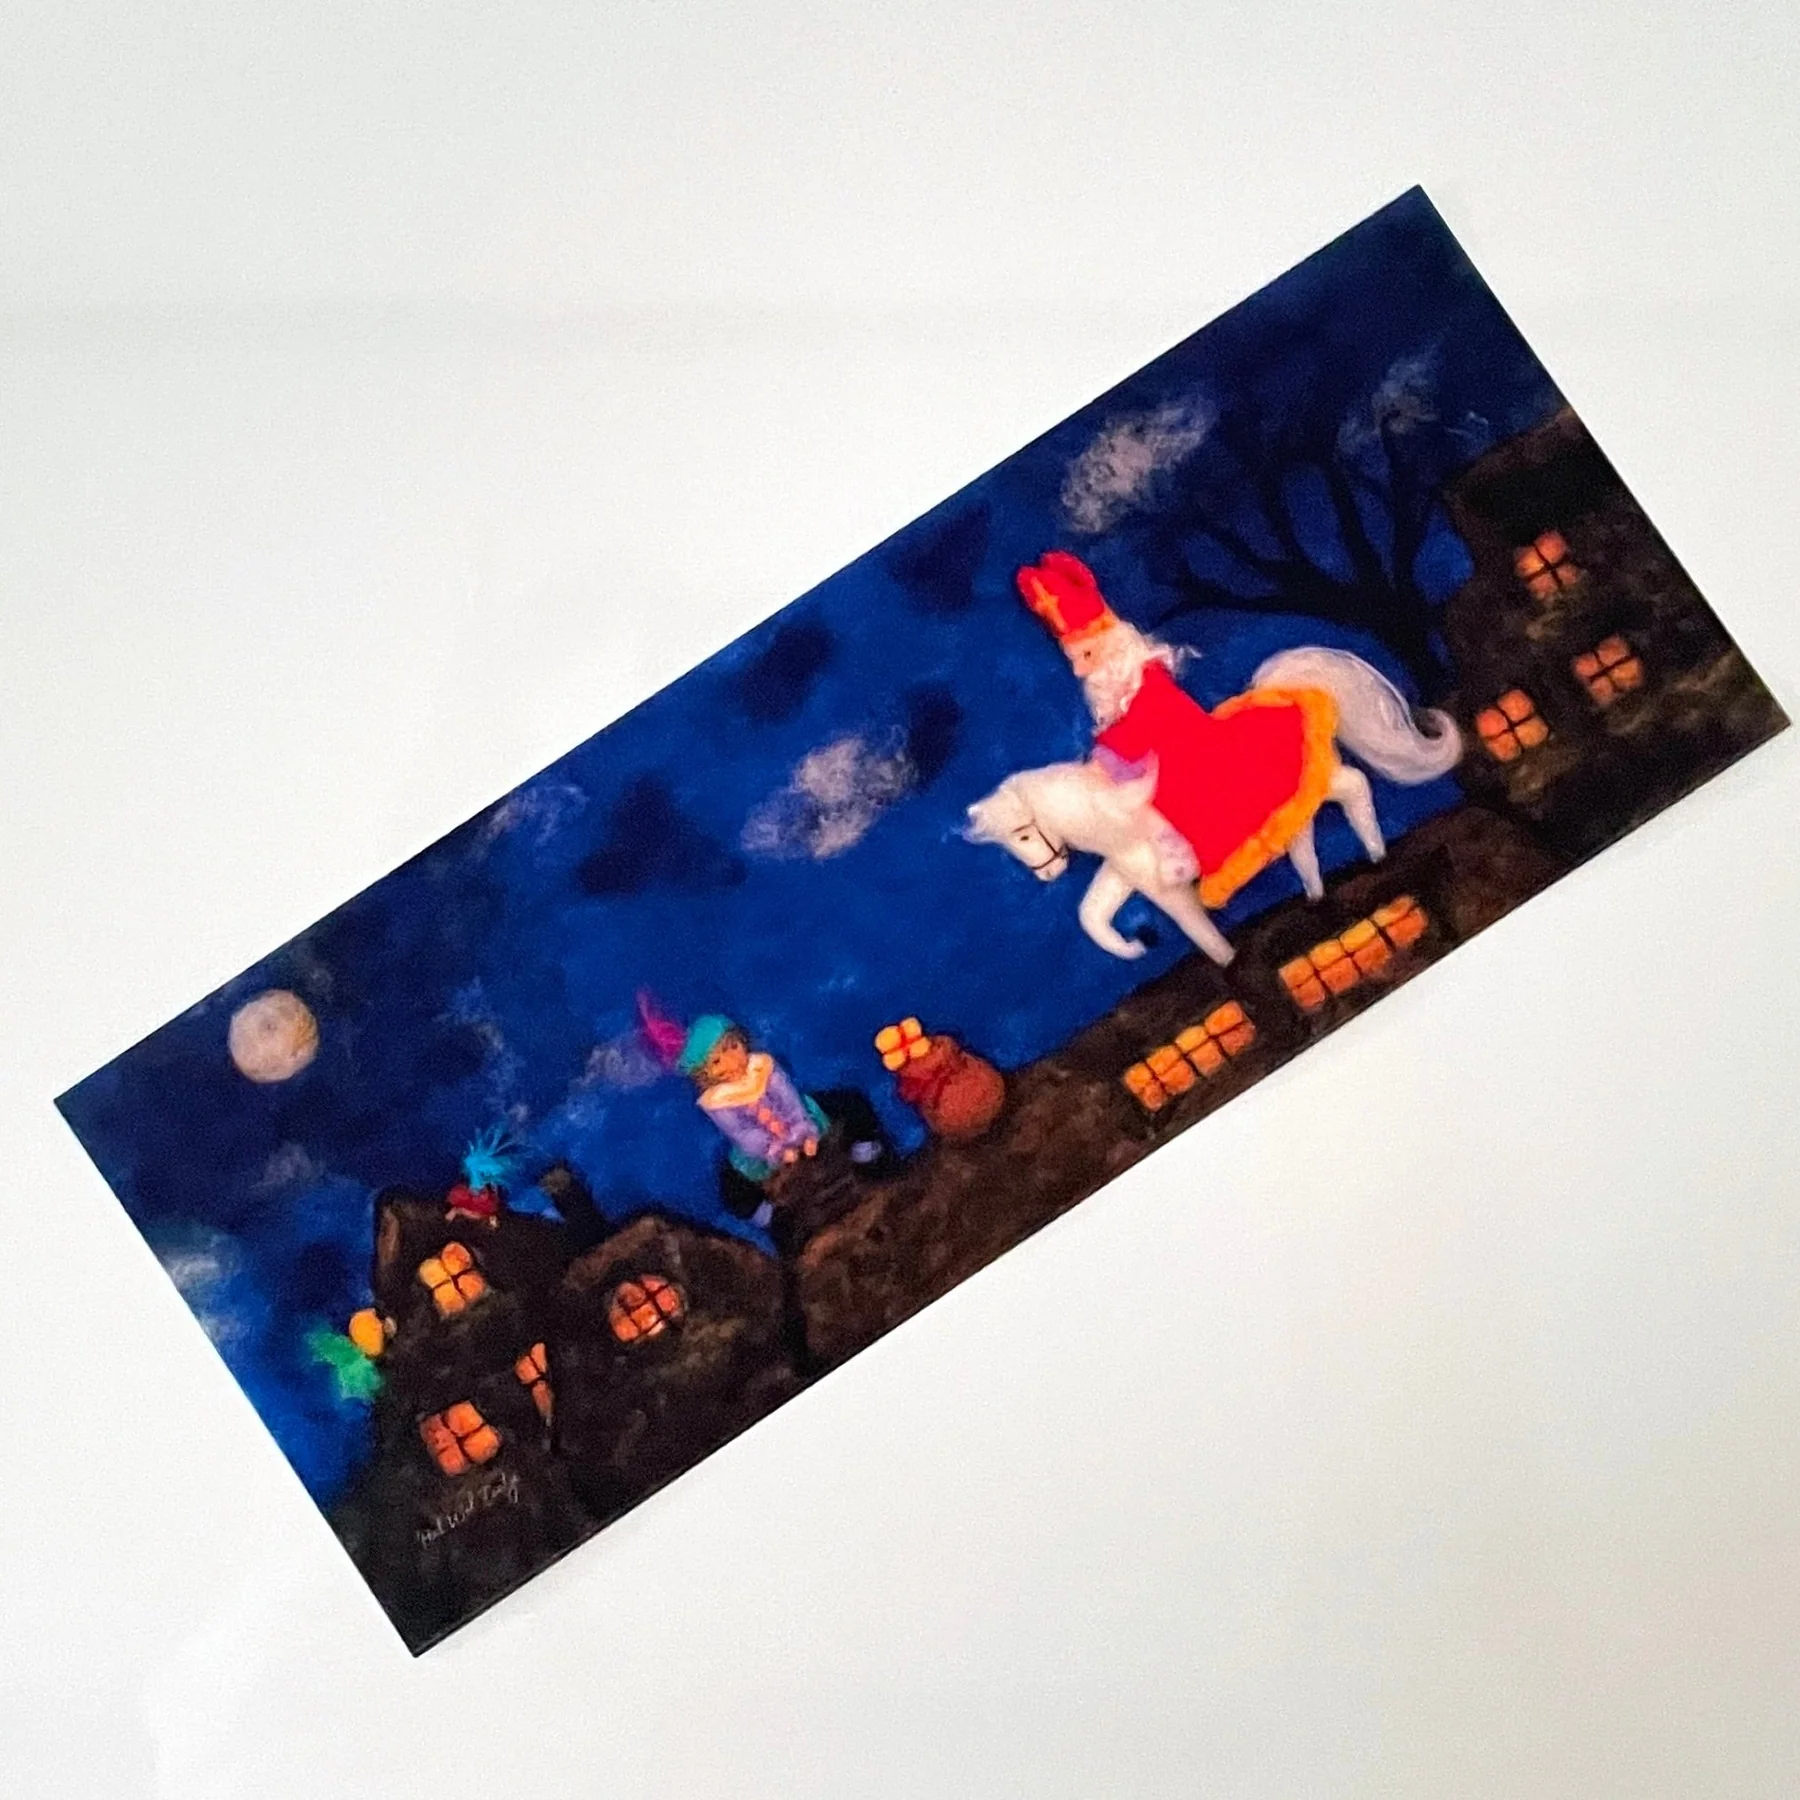 Lichtkaart, Sinterklaas